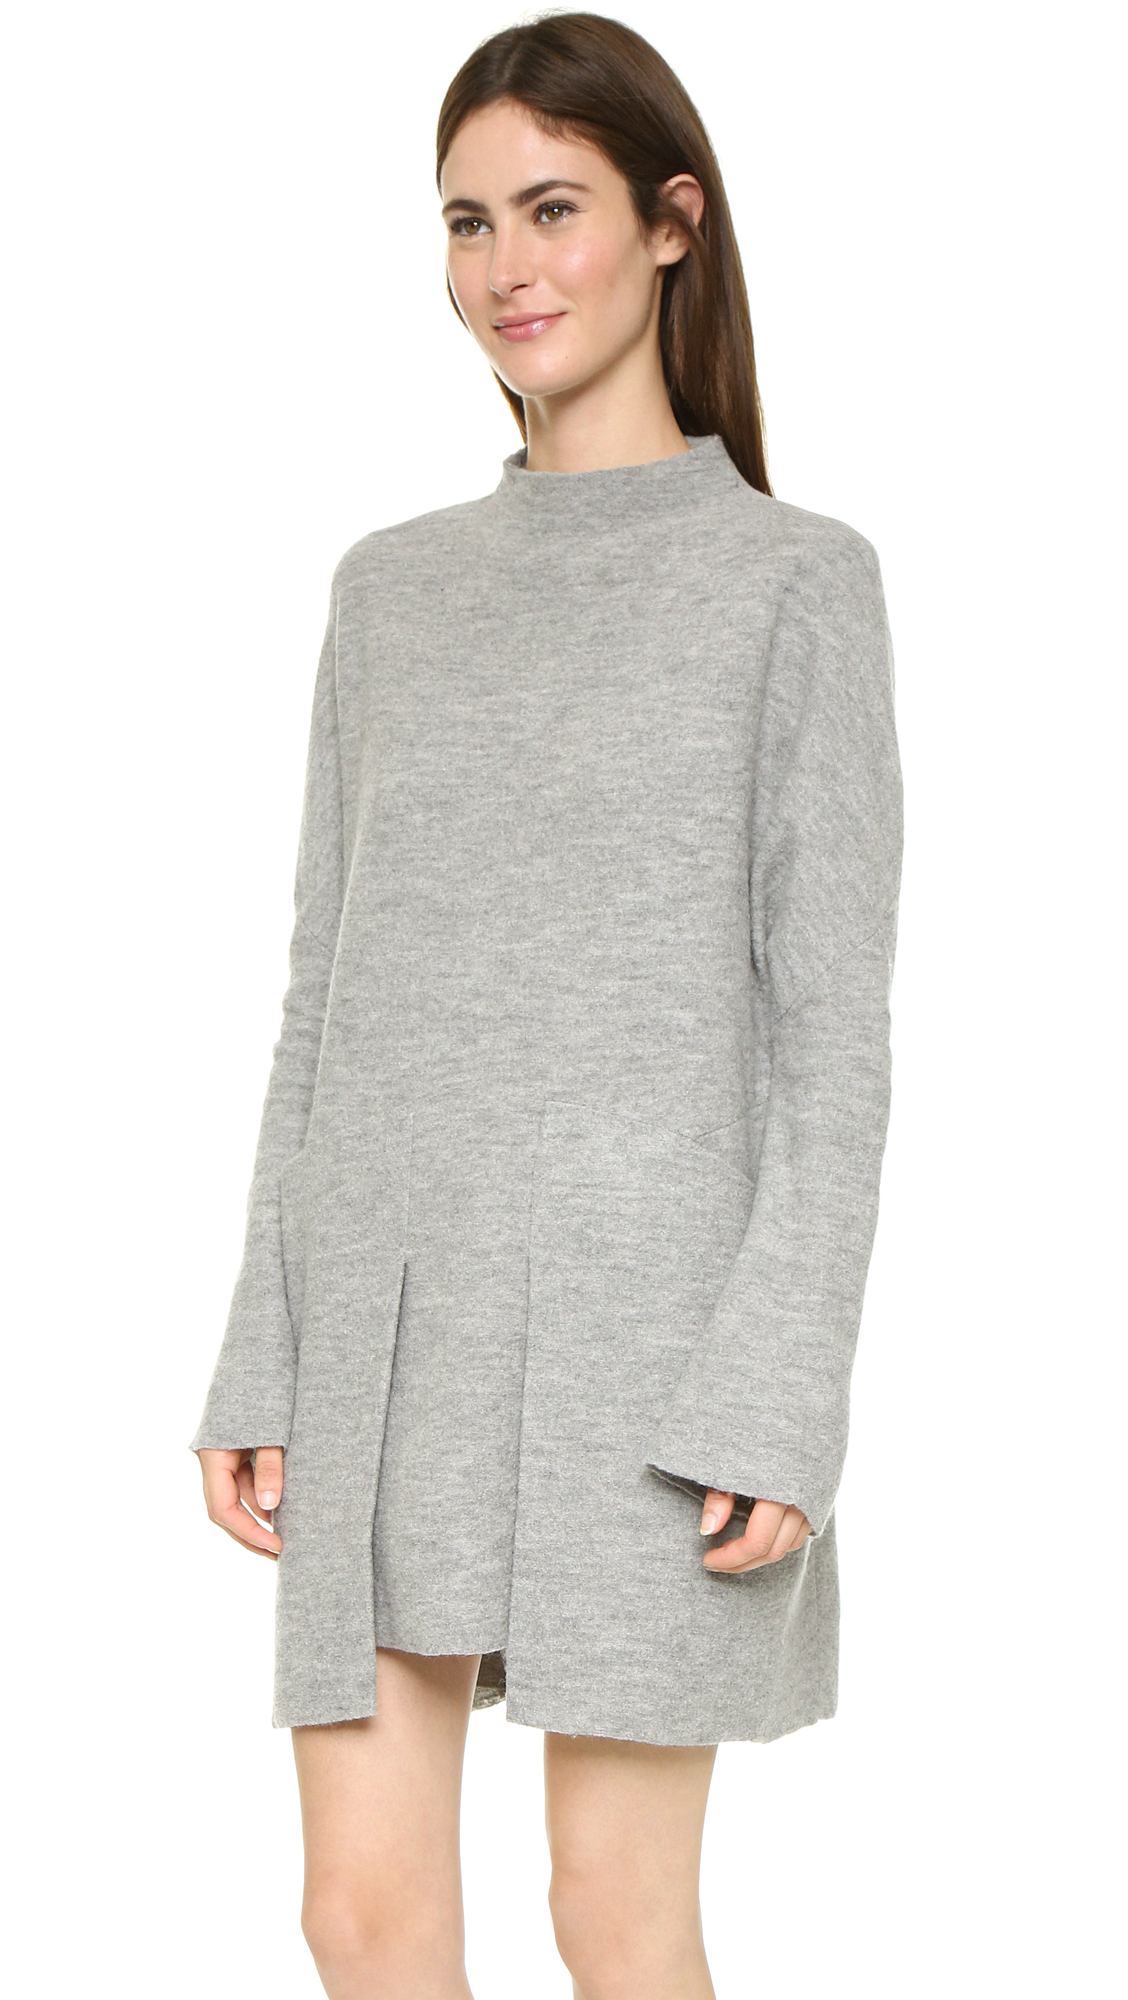 Lyst - Free People Zoe Swit Sweater Dress - Grey Heather in Gray